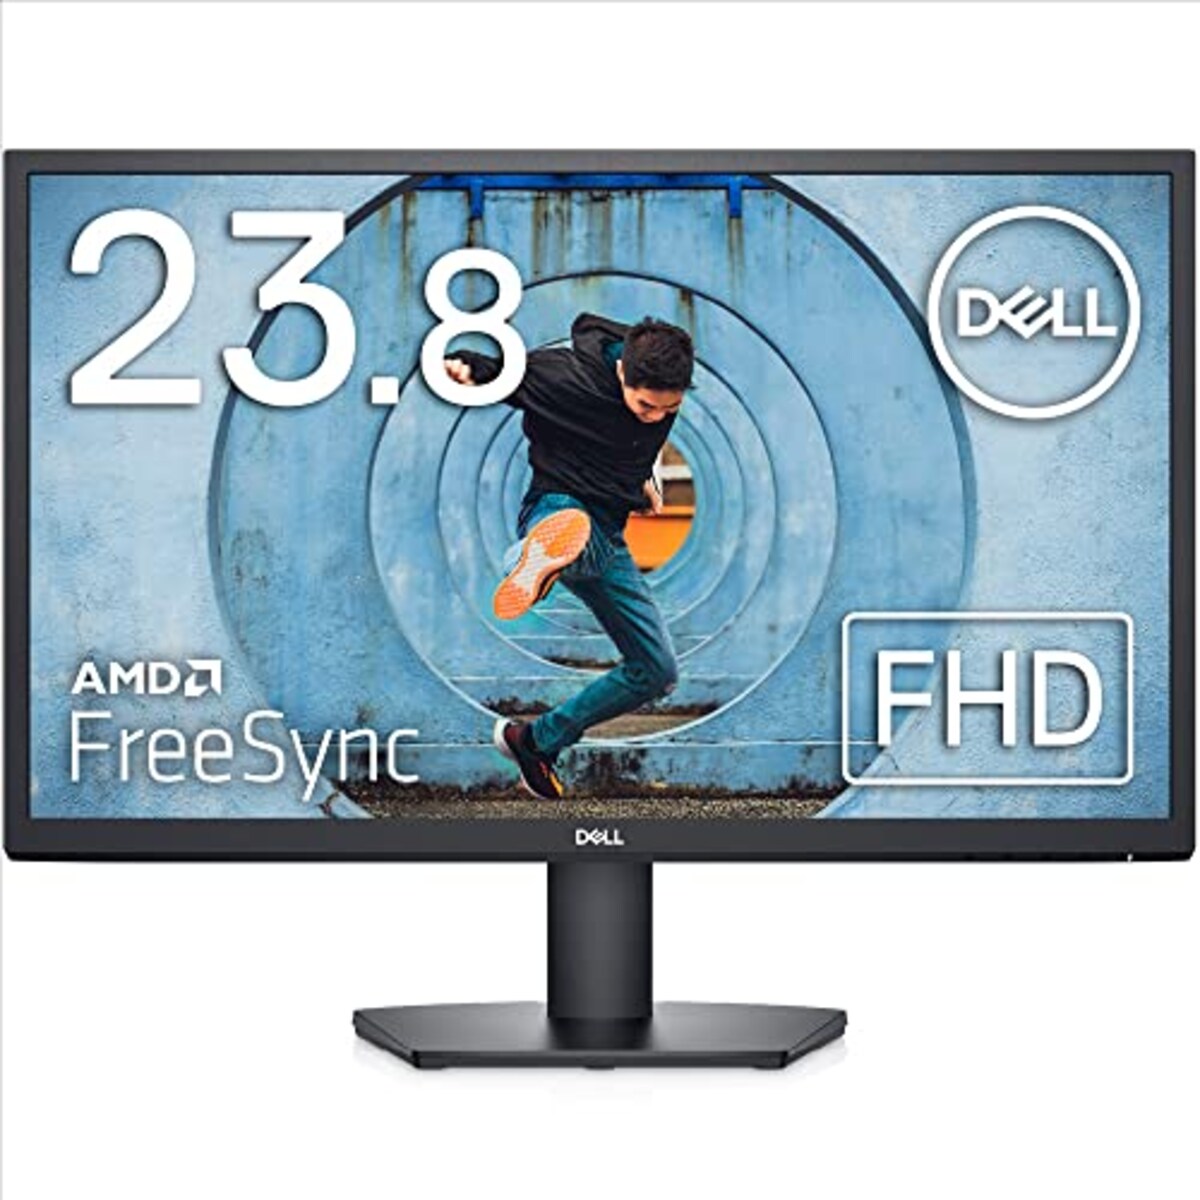 【Amazon.co.jp限定】Dell SE2422H 23.8インチ モニター ディスプレイ (3年間交換保証/FHD/VA 非光沢/HDMI D-Sub15ピン/傾き調整/AMD FreeSync)